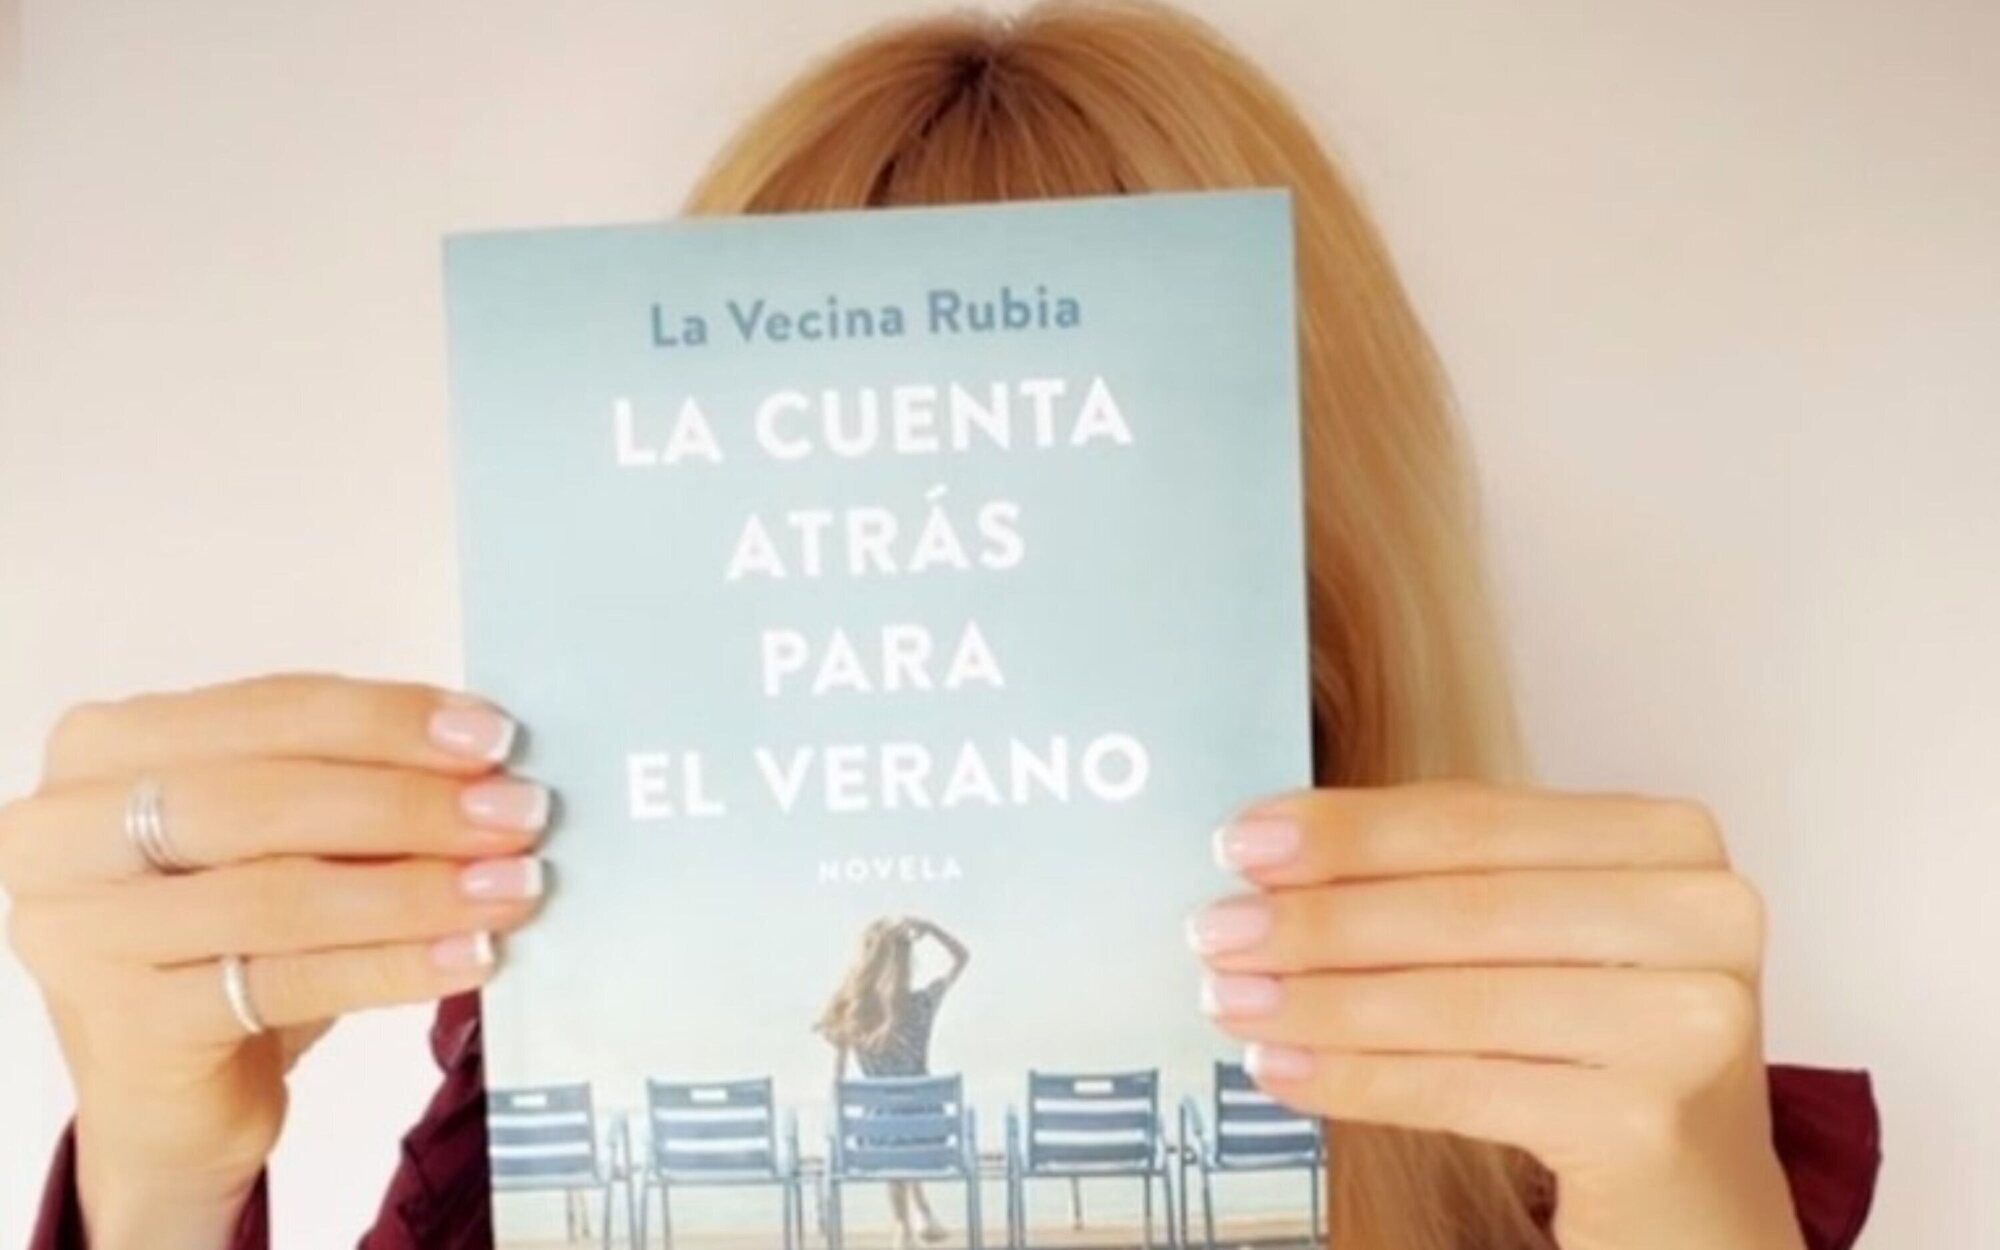 La Vecina Rubia se estrena en televisión con la serie sobre su libro "La cuenta atrás para el verano"